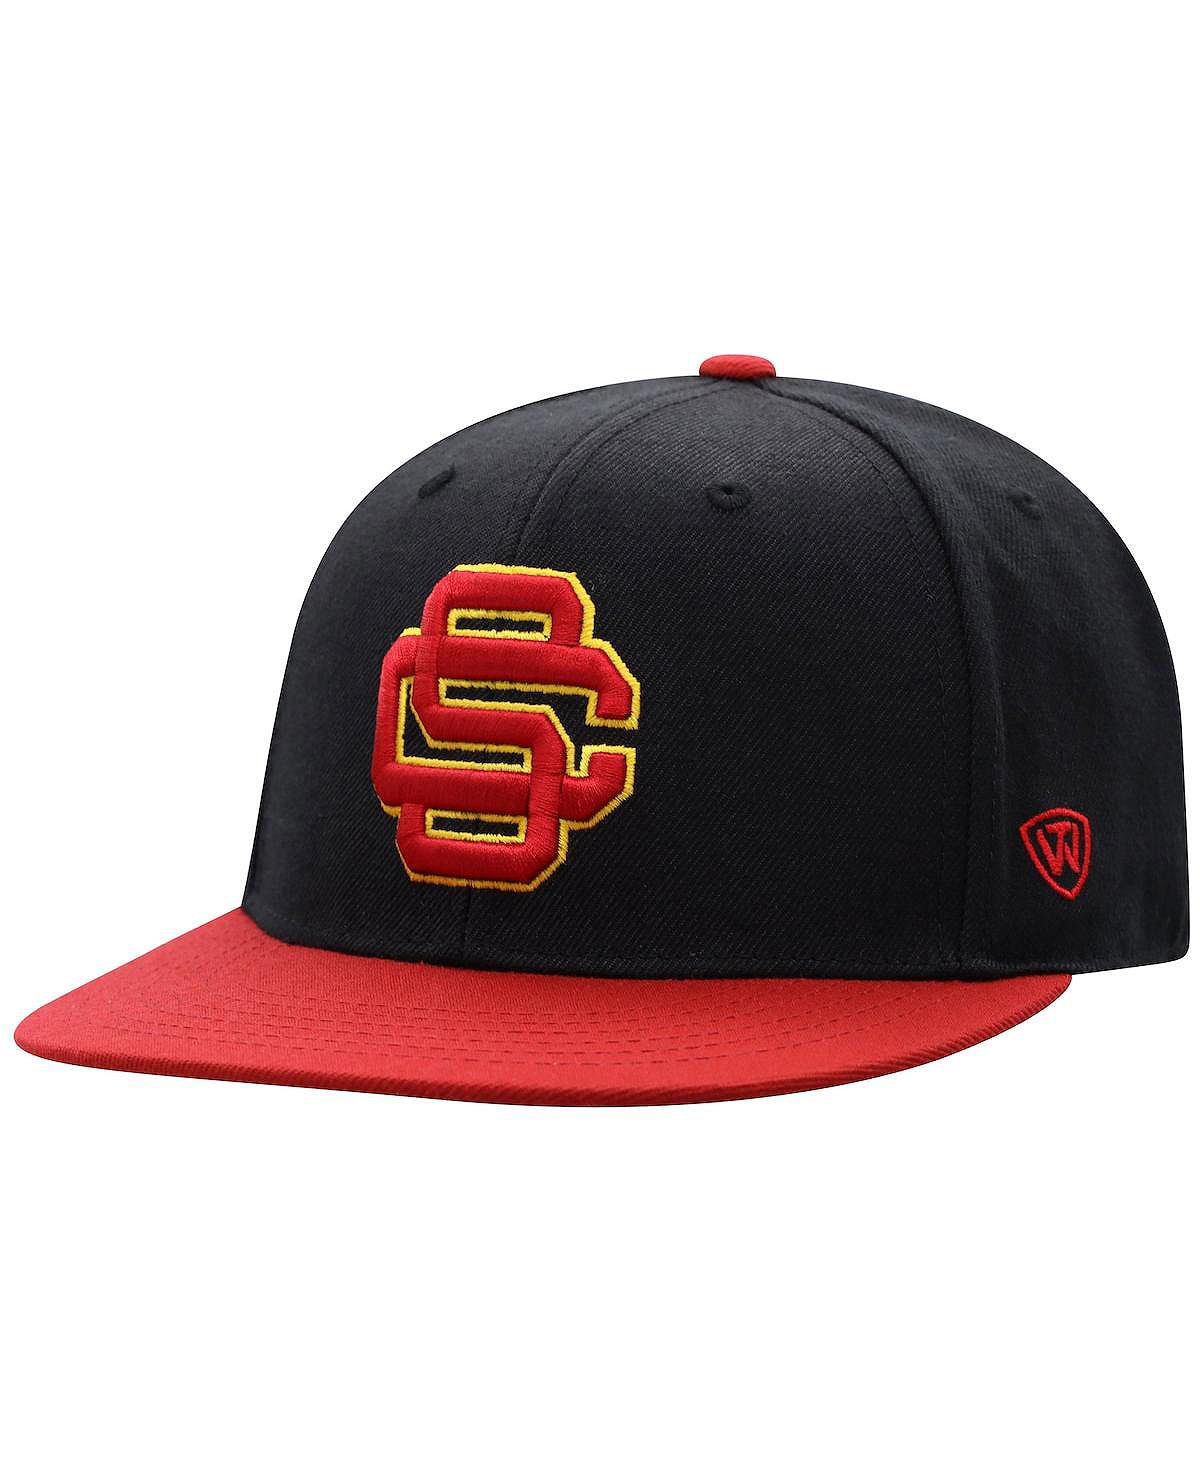 Мужская двухцветная приталенная шляпа черного цвета и цвета Cardinal USC Trojans Team Top of the World zone 51 cardinal black